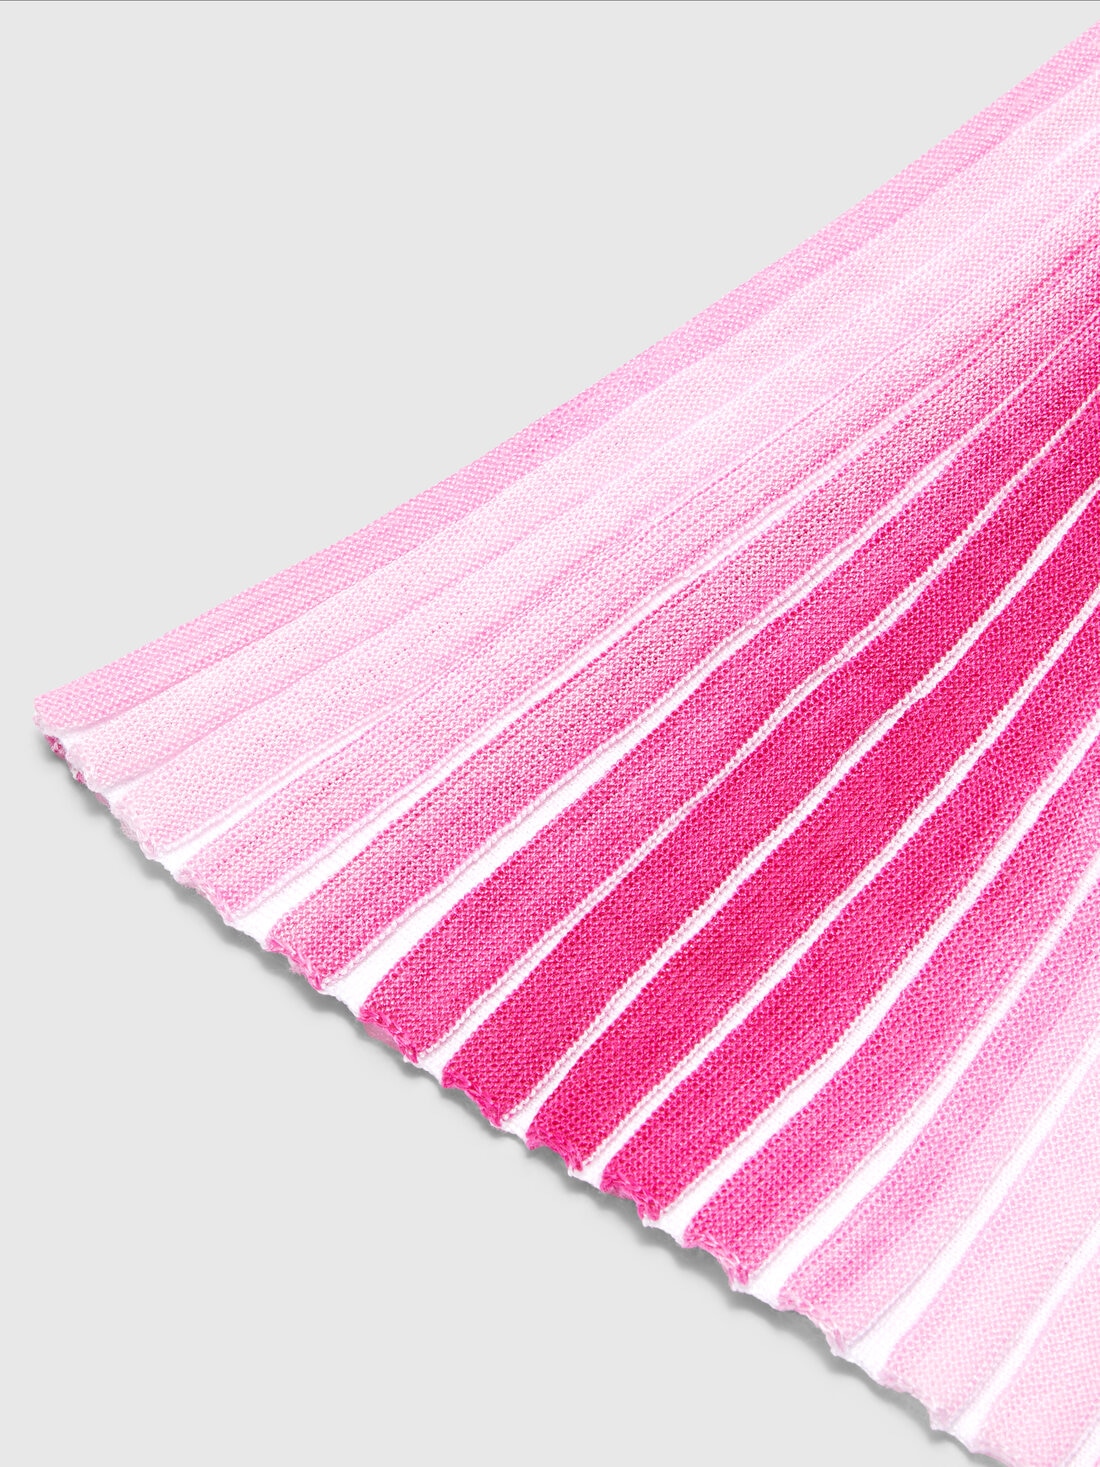 Midi dress in striped viscose knit, Pink   - KS24SG01BV00FVS30DI - 3